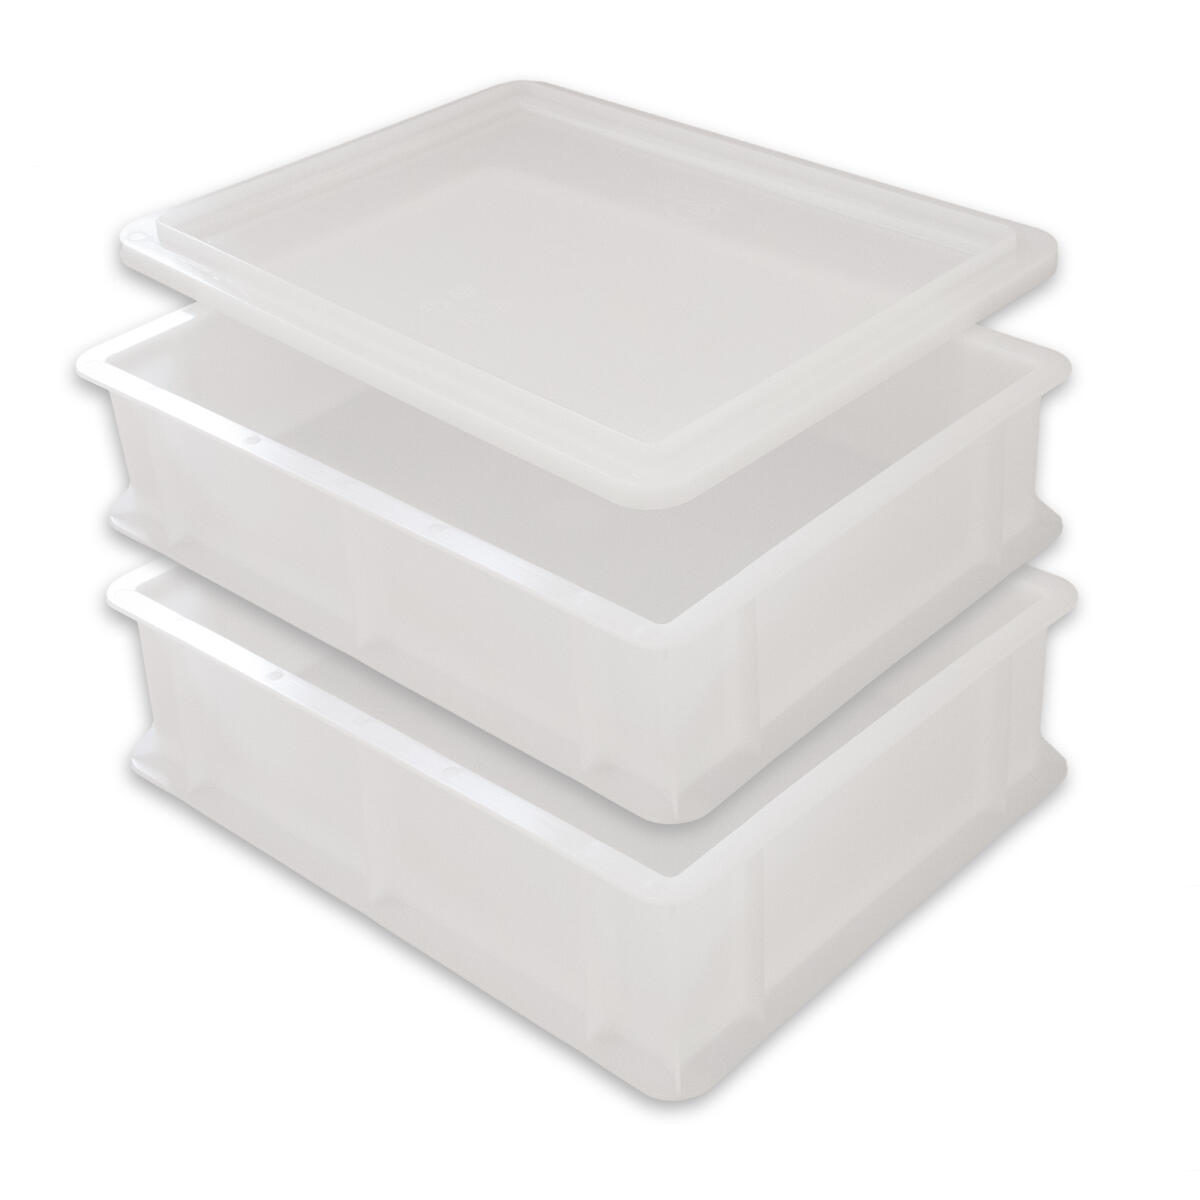 3 Stück Pizzaballenbox weiß Aufbewahrungsbehälter 60 x 40 x 7 cm Gastlando 